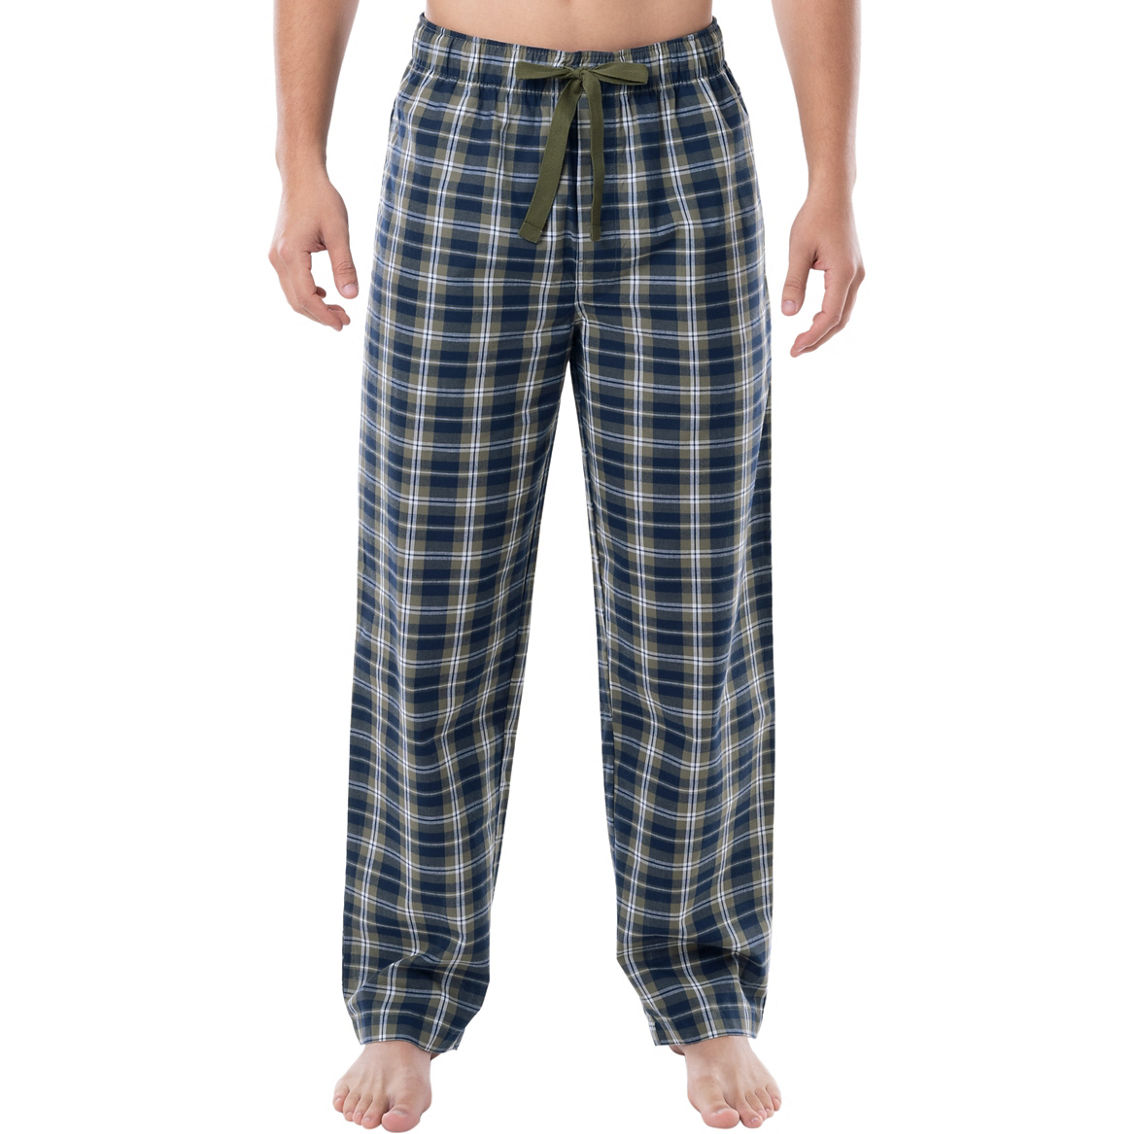 Wrangler Cvc Woven Sleep Pants | Pajamas & Robes | Clothing ...